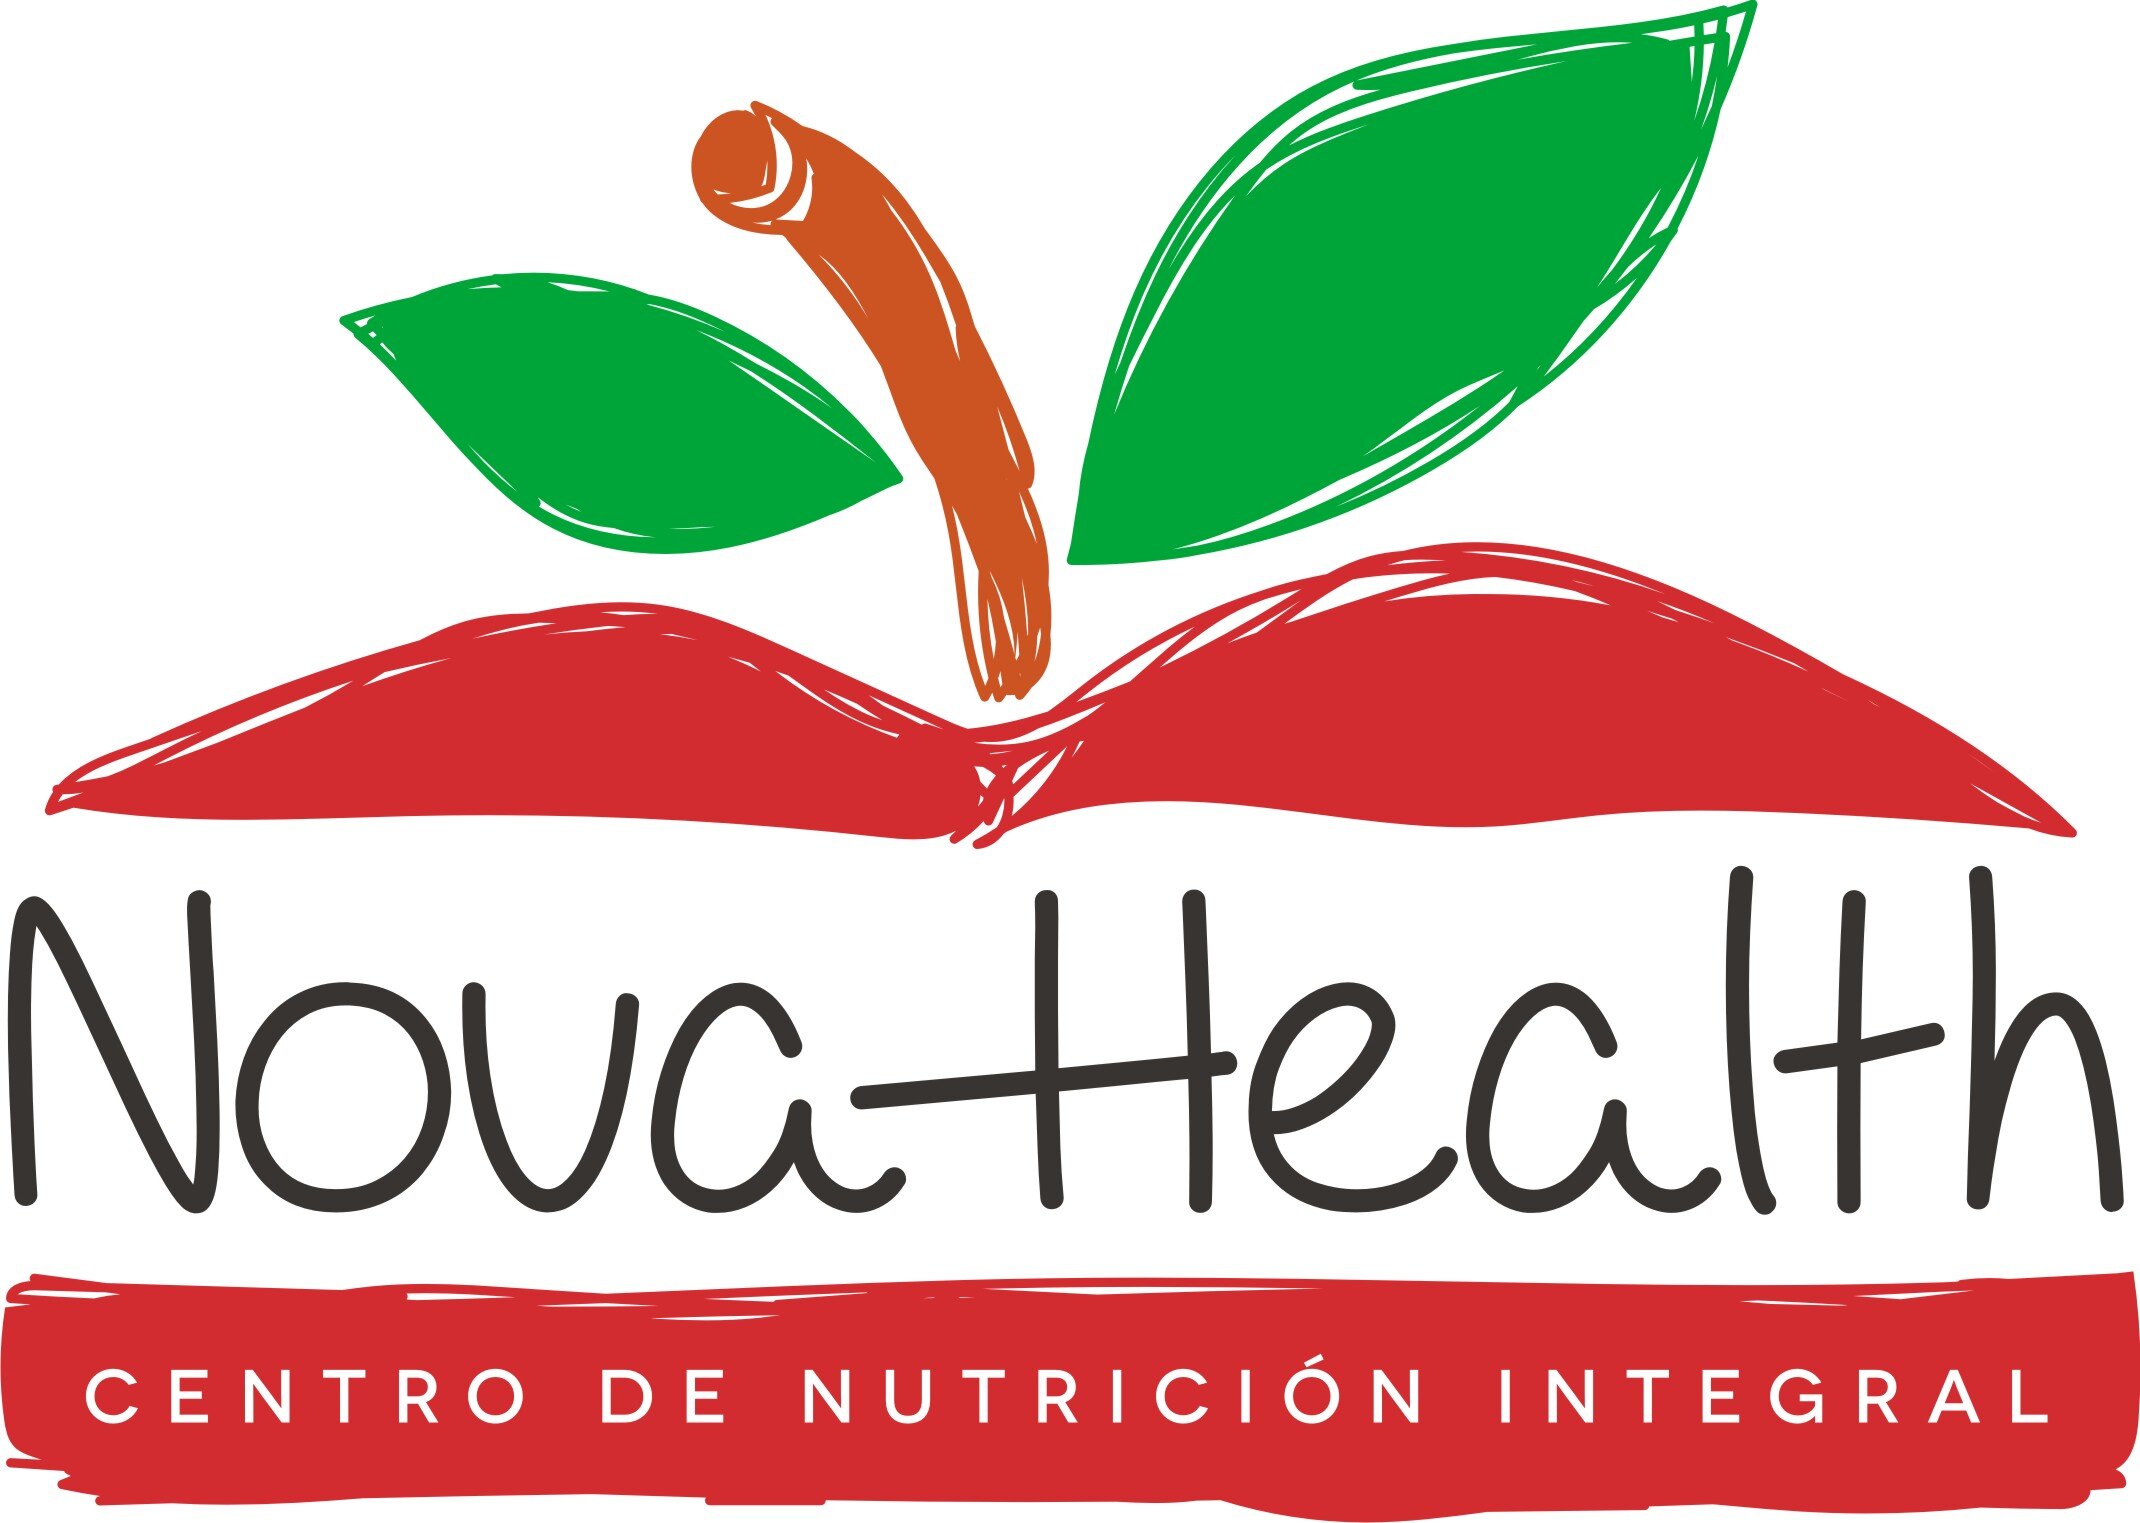 Centro de Nutrición Integral, especializado en atención de enfermedades cronico-degenerativas entre otras mediante la atención  personalizada de nutrición.